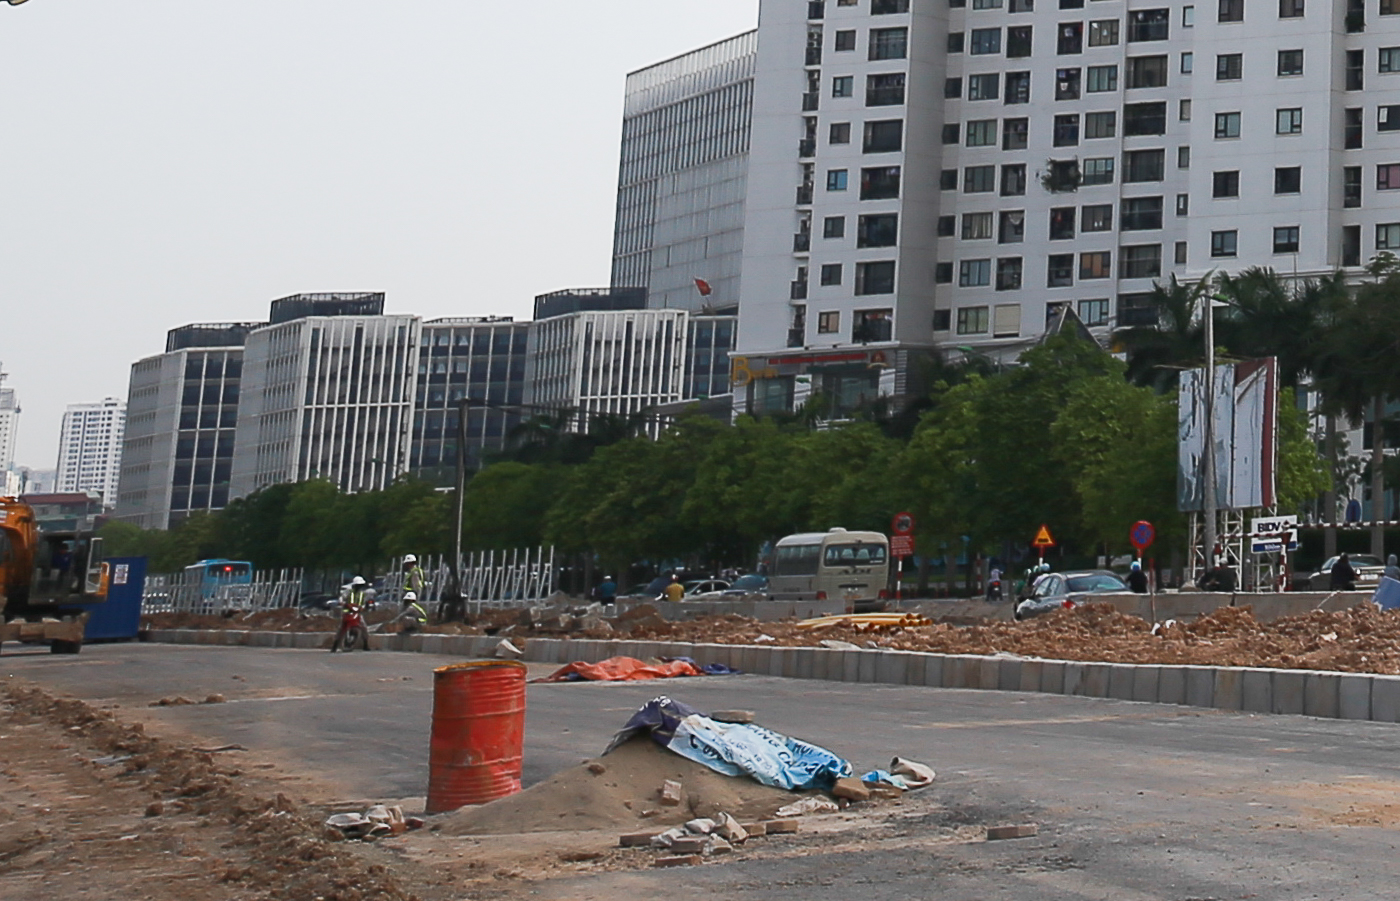 Đường Vành đai 3 đoạn Mai Dịch - cầu Thăng Long (đường Phạm Văn Đồng) Hà Nội có tổng chiều dài 5,5km. Dự án có tổng mức đầu tư là 3.113 tỷ đồng bằng nguồn ngân sách của TP Hà Nội; dự kiến hoàn thiện vào quý I năm 2018.